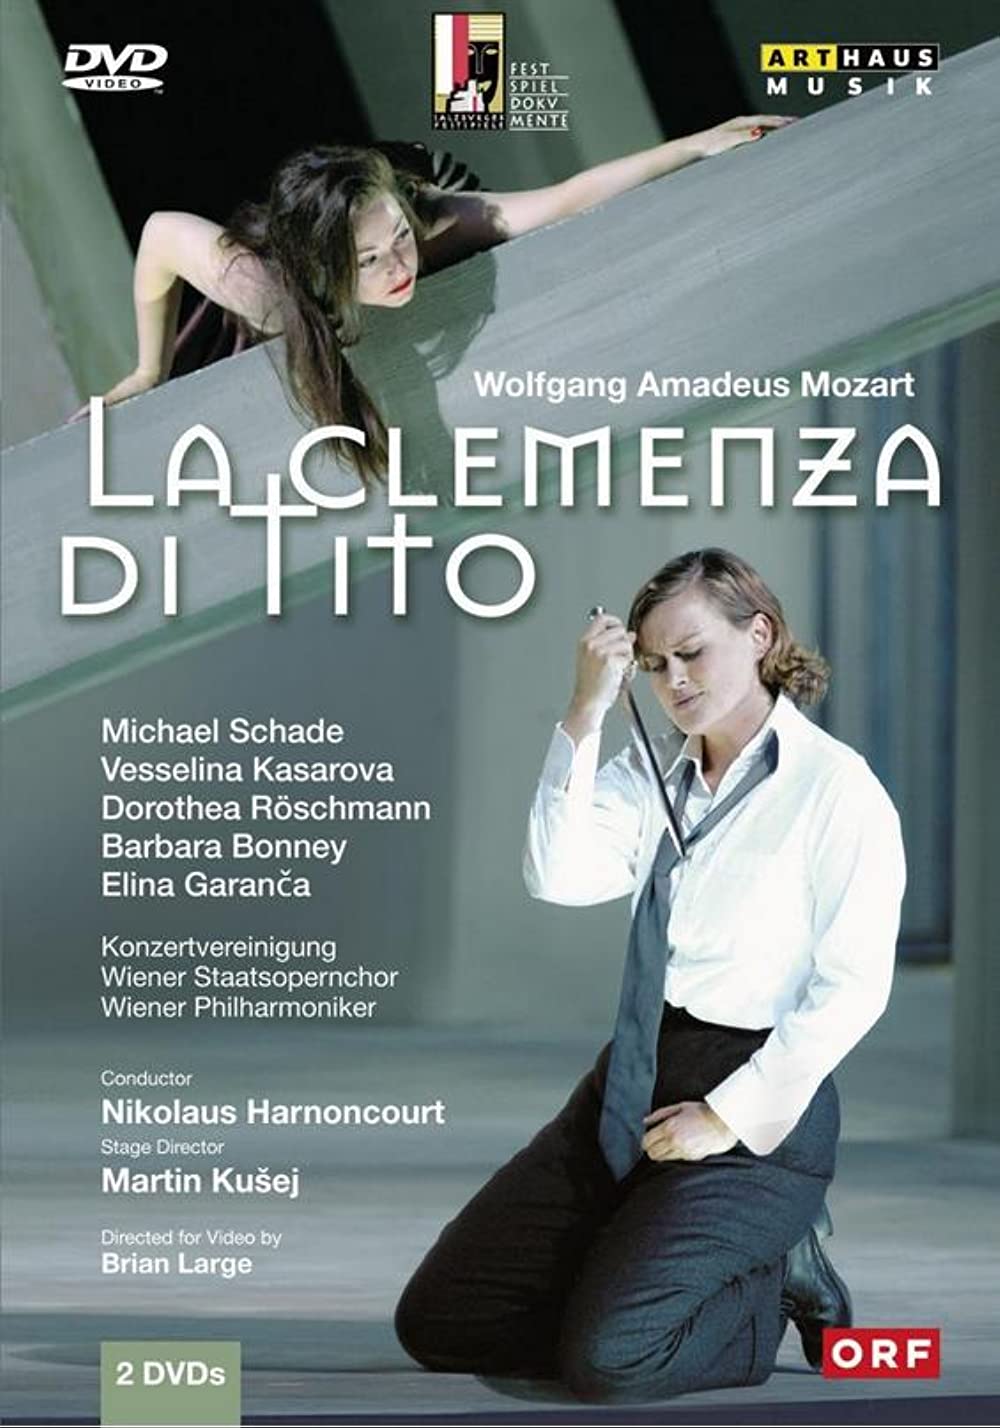 Filmbeschreibung zu La clemenza di tito